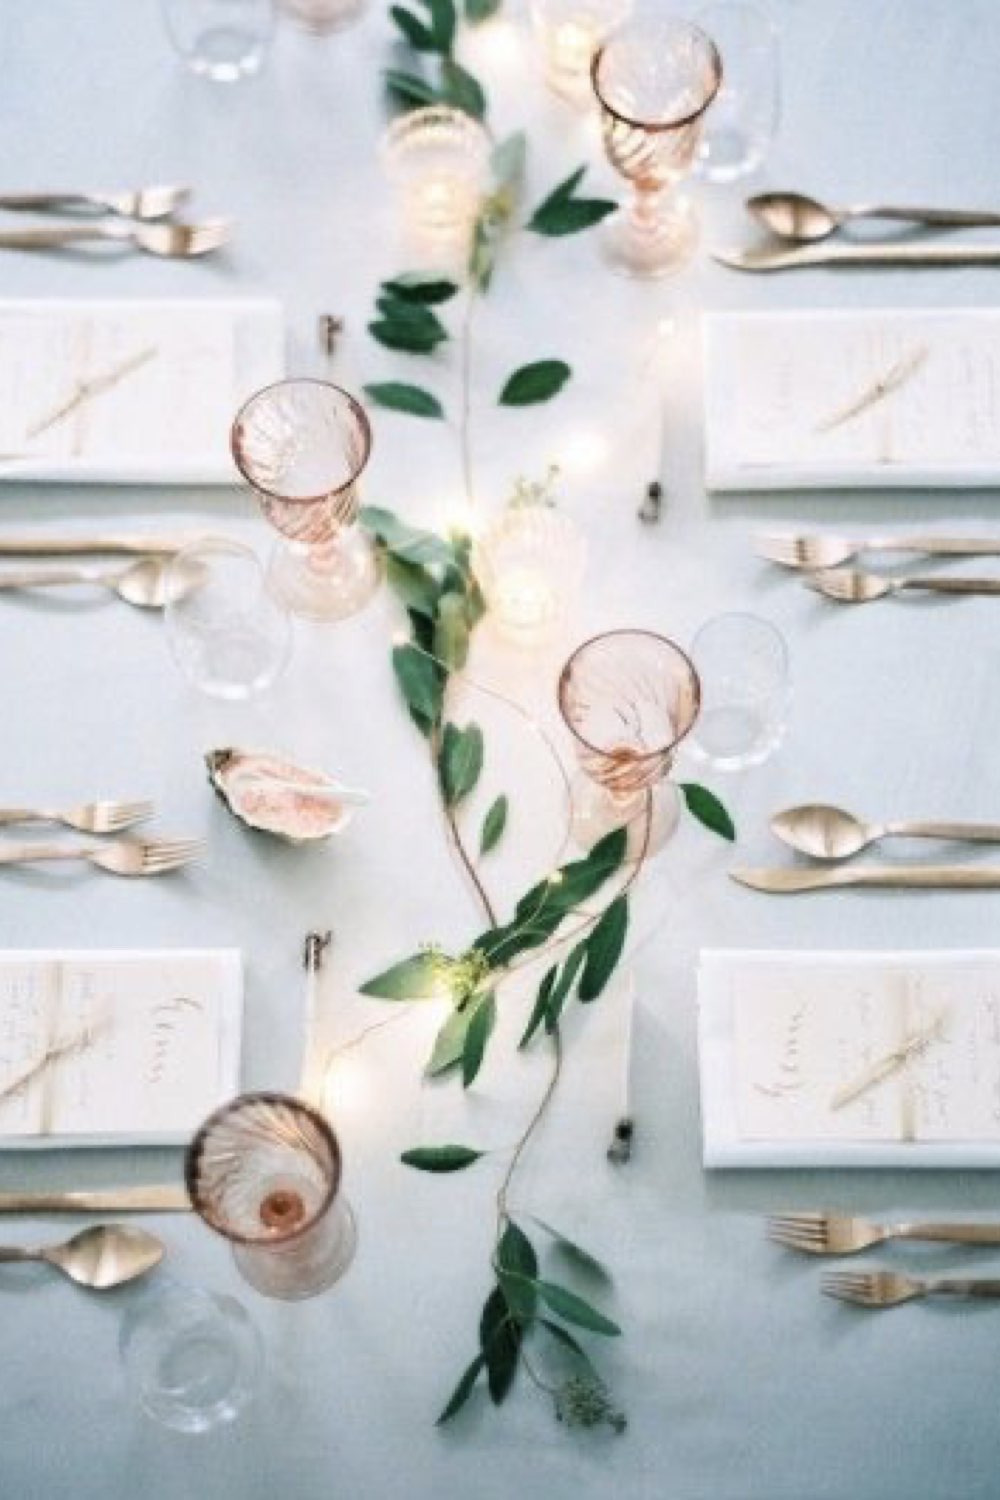 decoration mariage simple minimal chic verre à pied coloré chemin de table facile plante grimpante sans assiette deco table couvert serviette et menu